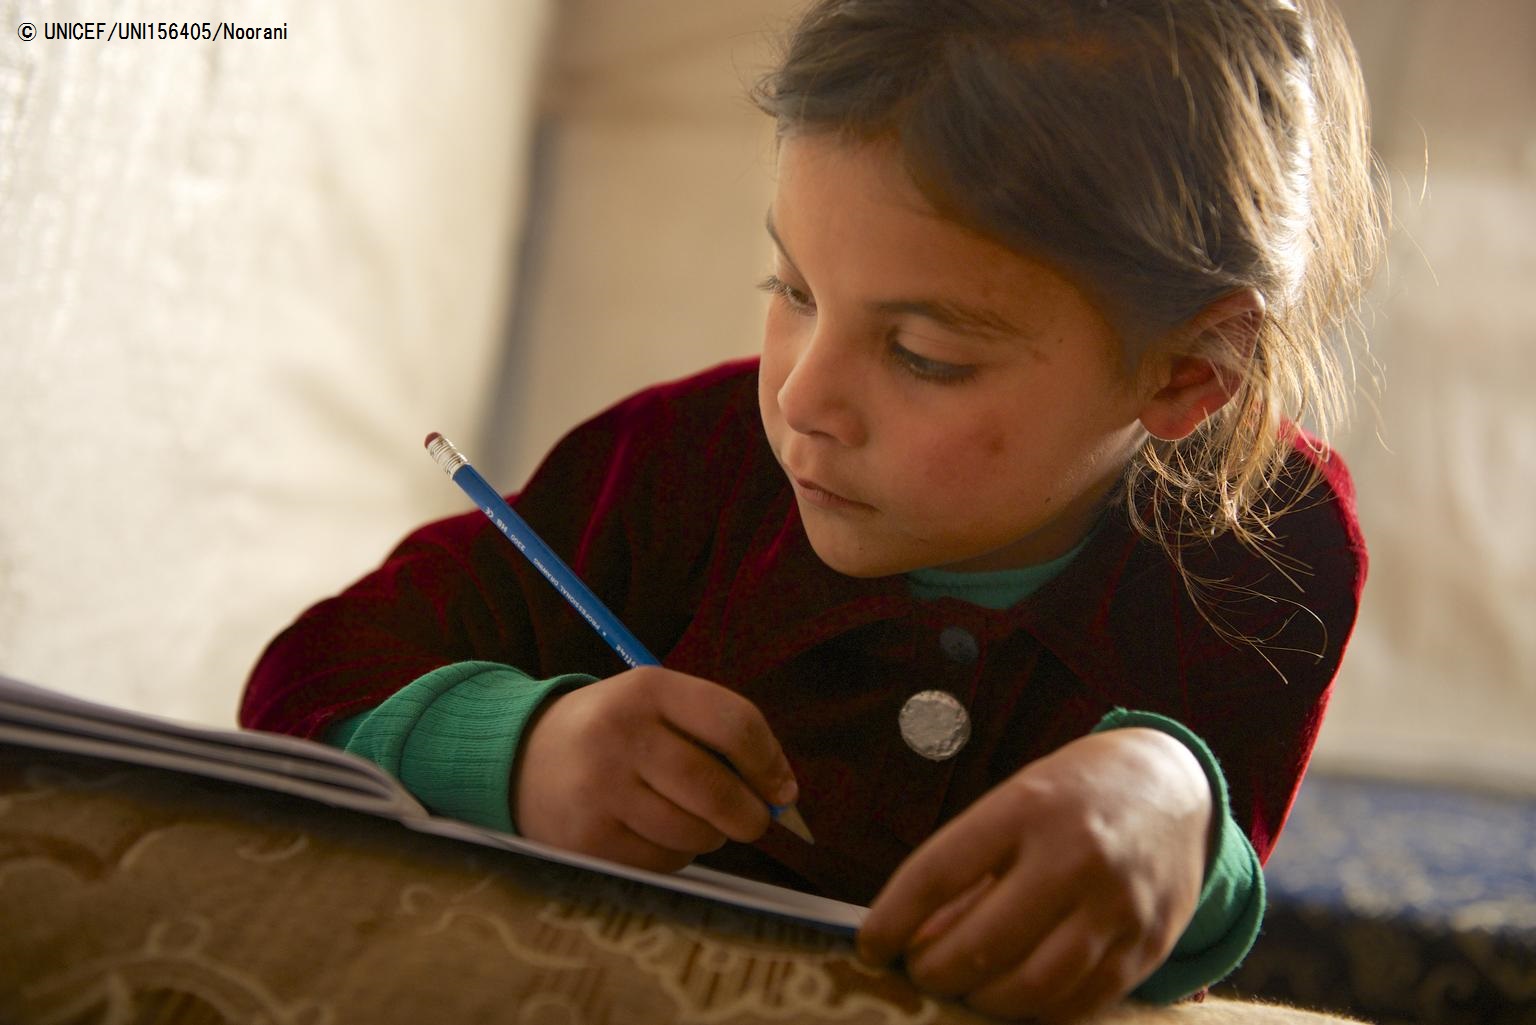 シリア難民の子どもへの教育支援 クルーニー夫妻とユニセフが協力 プレスリリース 公益財団法人日本ユニセフ協会のプレスリリース